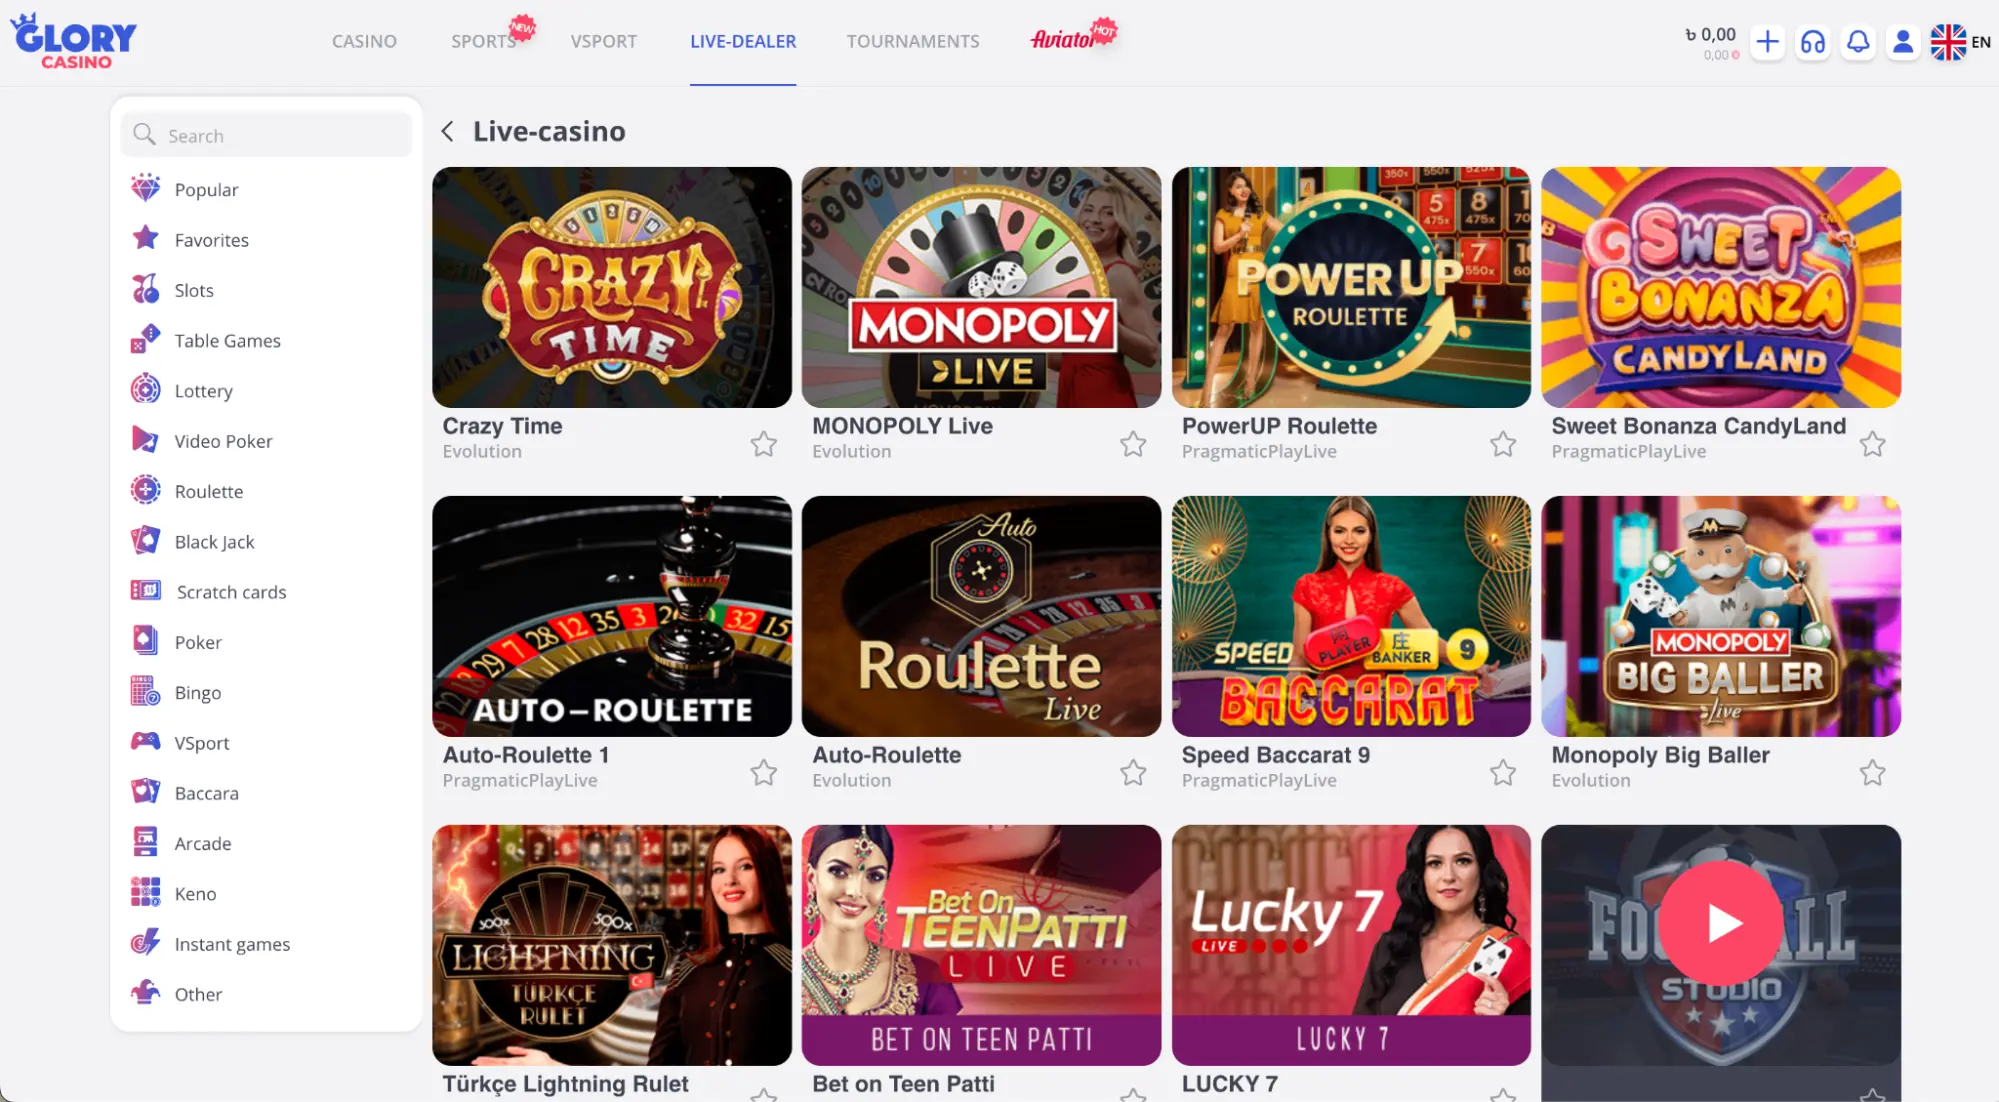 Homepage - Glory Casino